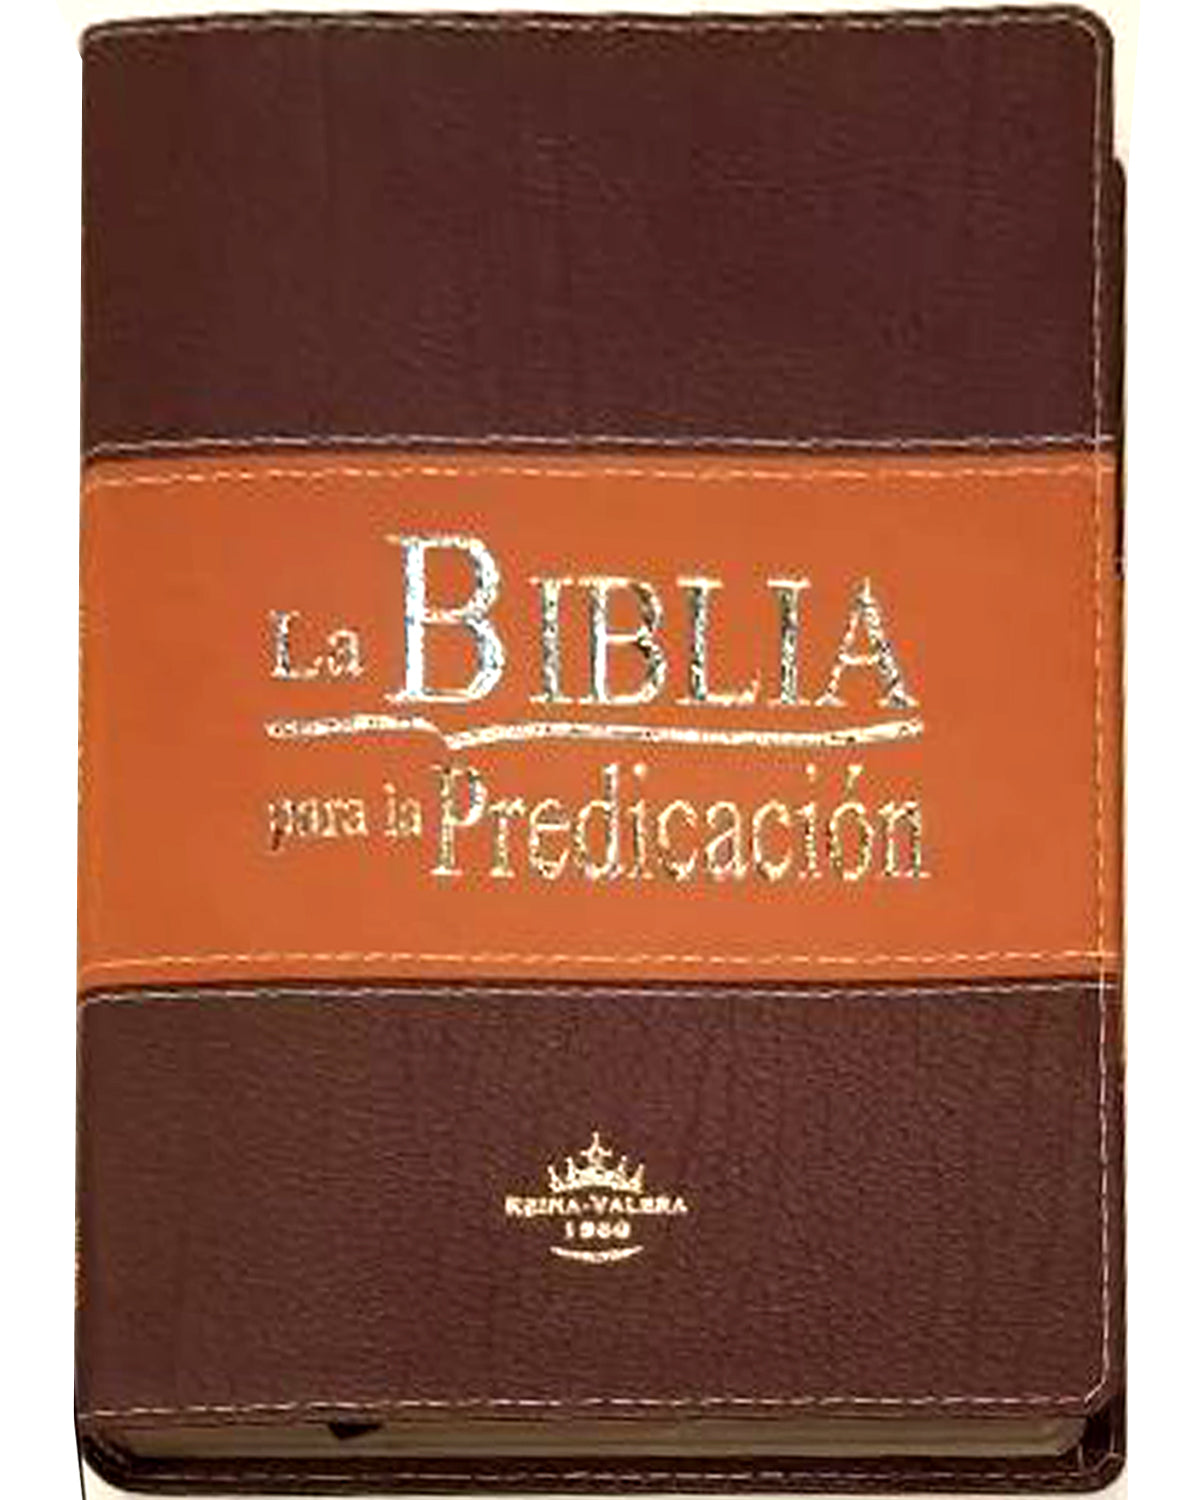 Biblia Rvr60 Para La Predicacion Piel Italiana Dos Tonos Cafe/Marron Con Indice